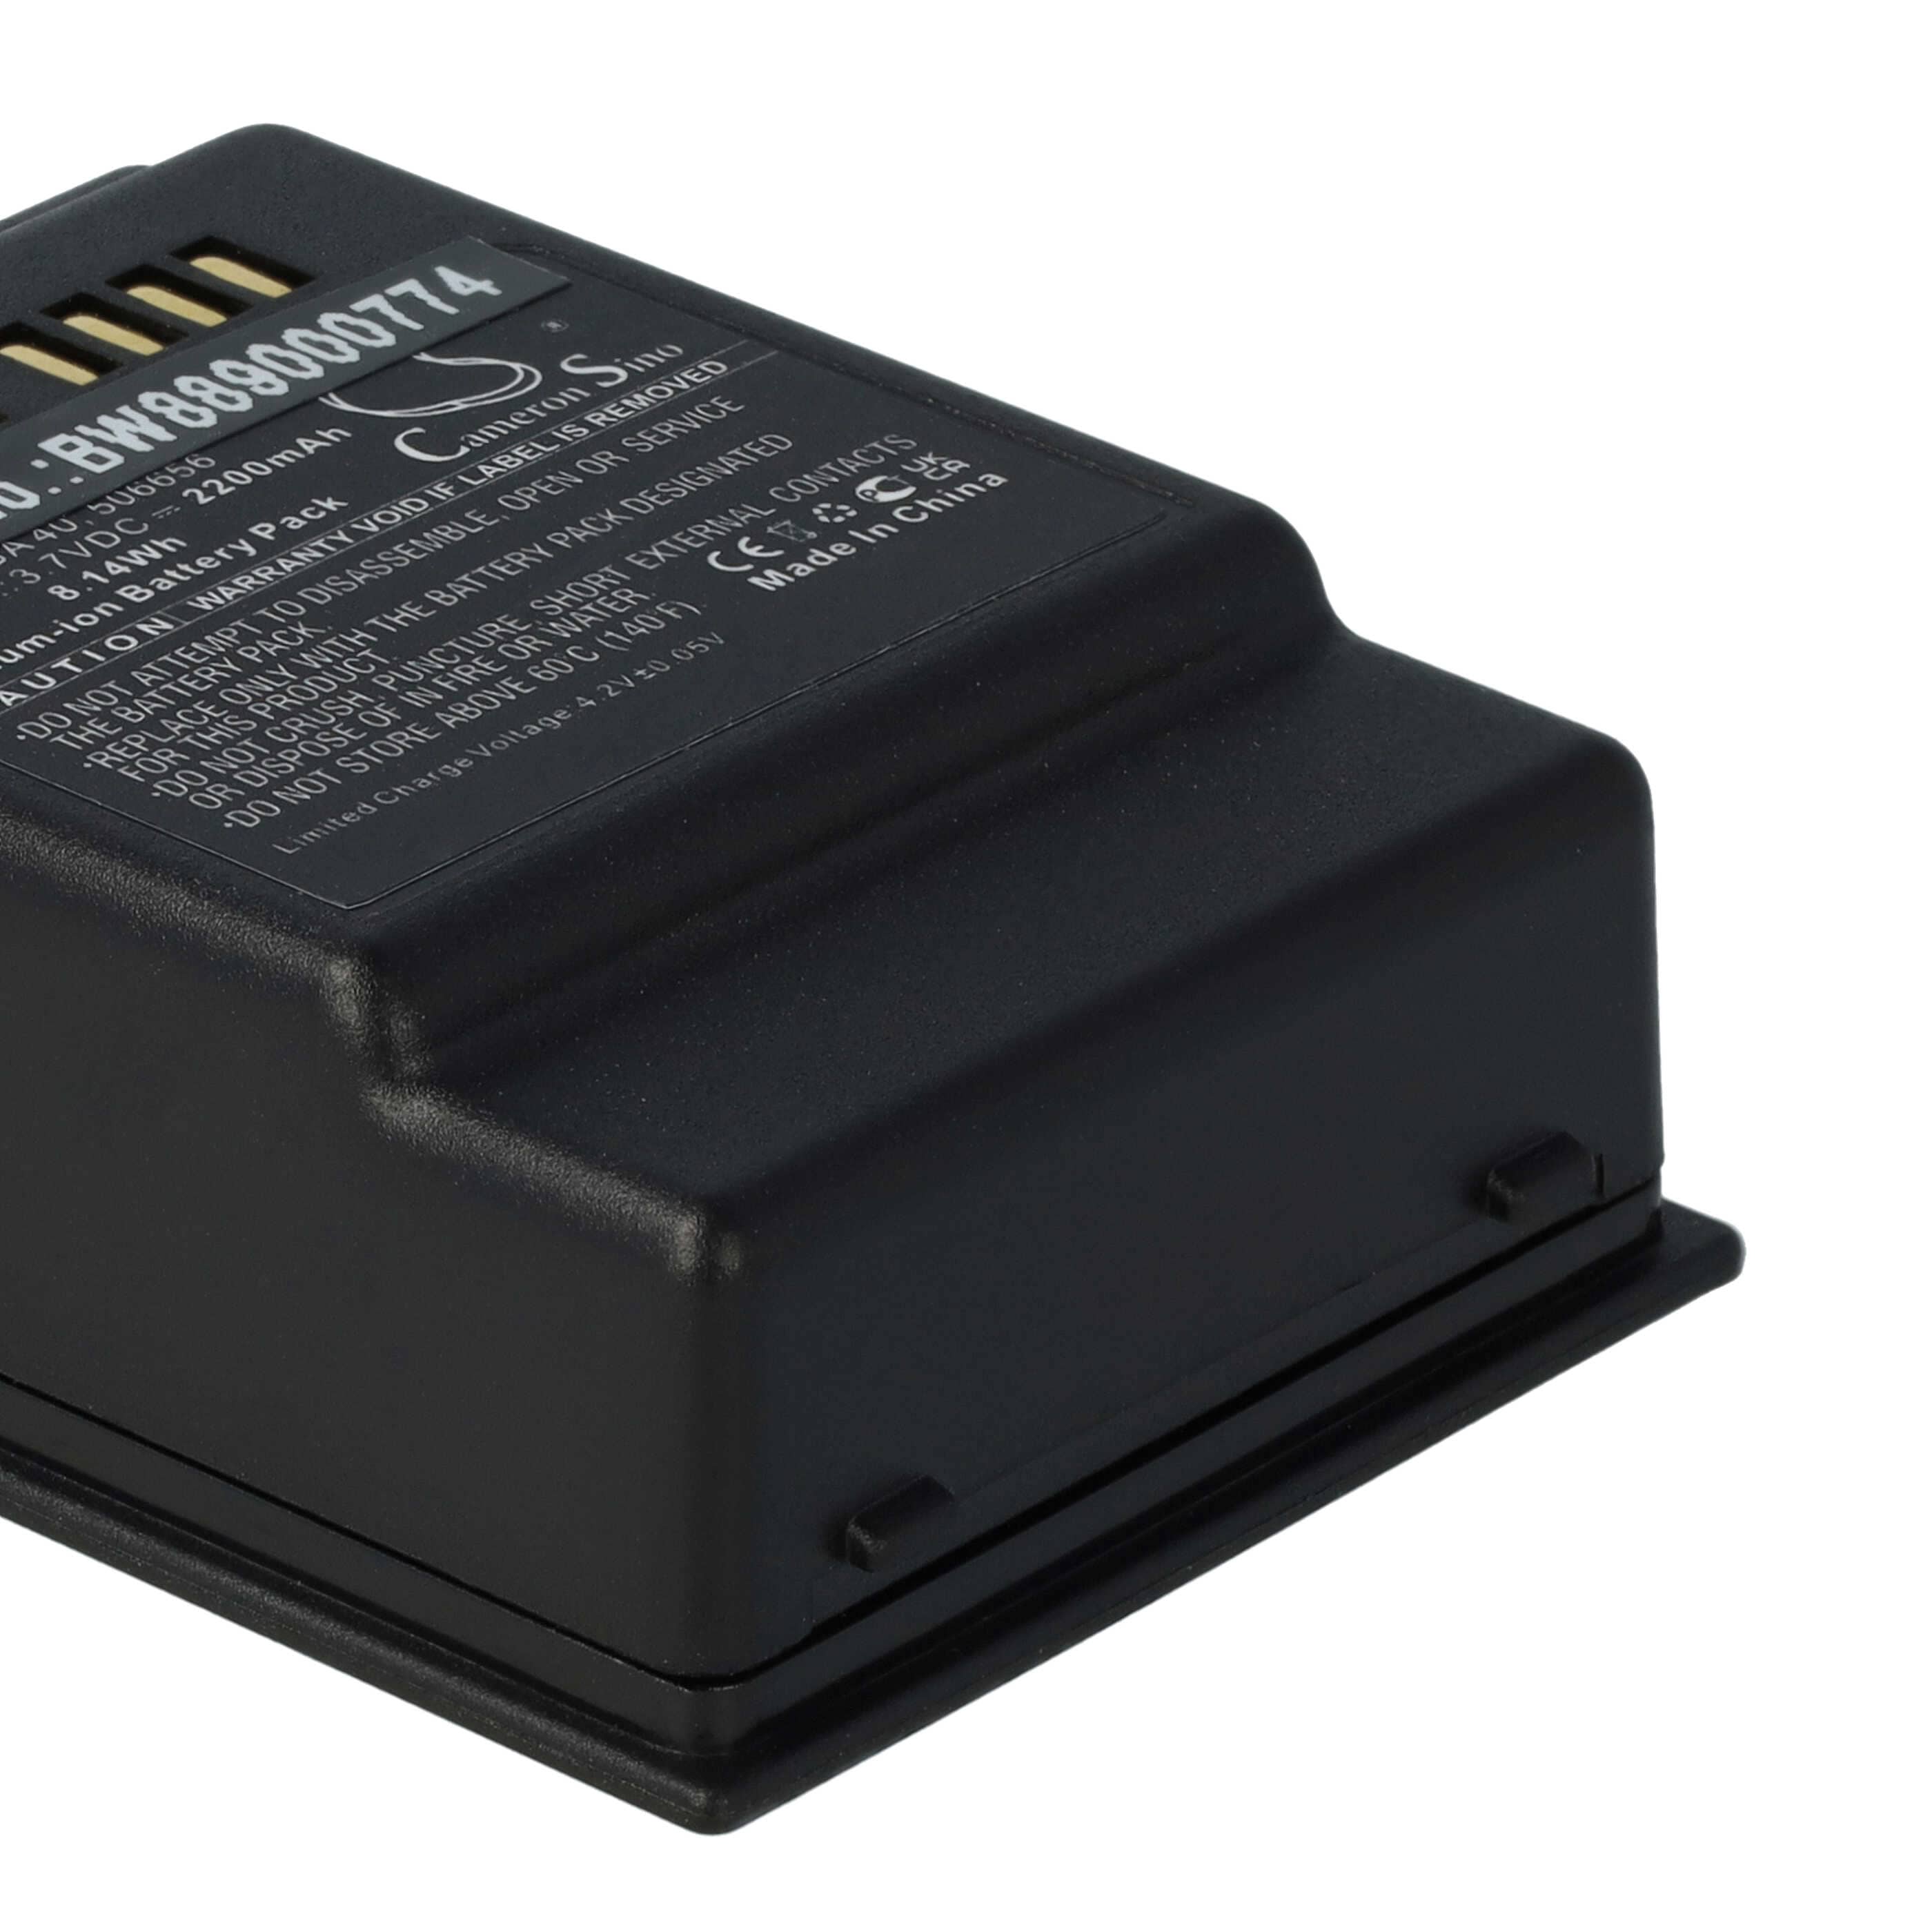 Batterie remplace Sennheiser 506656, BA 40 pour microphone socle - 2200mAh 3,7V Li-ion